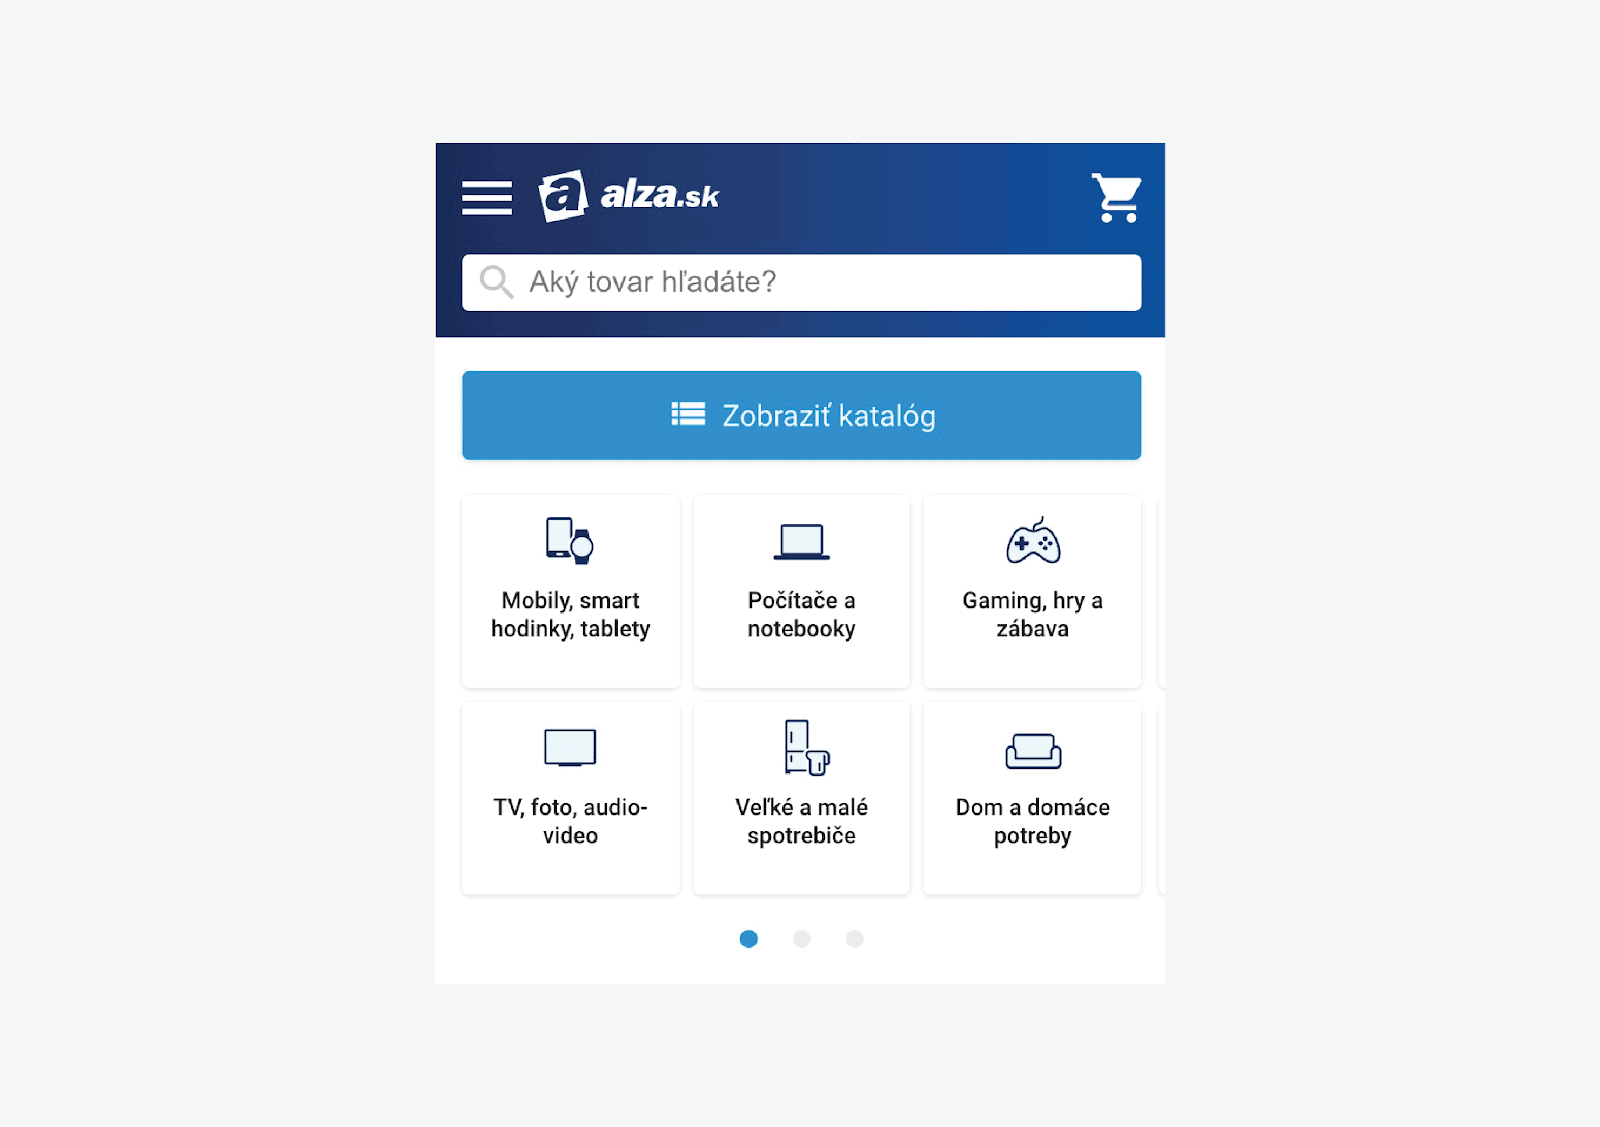 Alza mobile menu search navigation